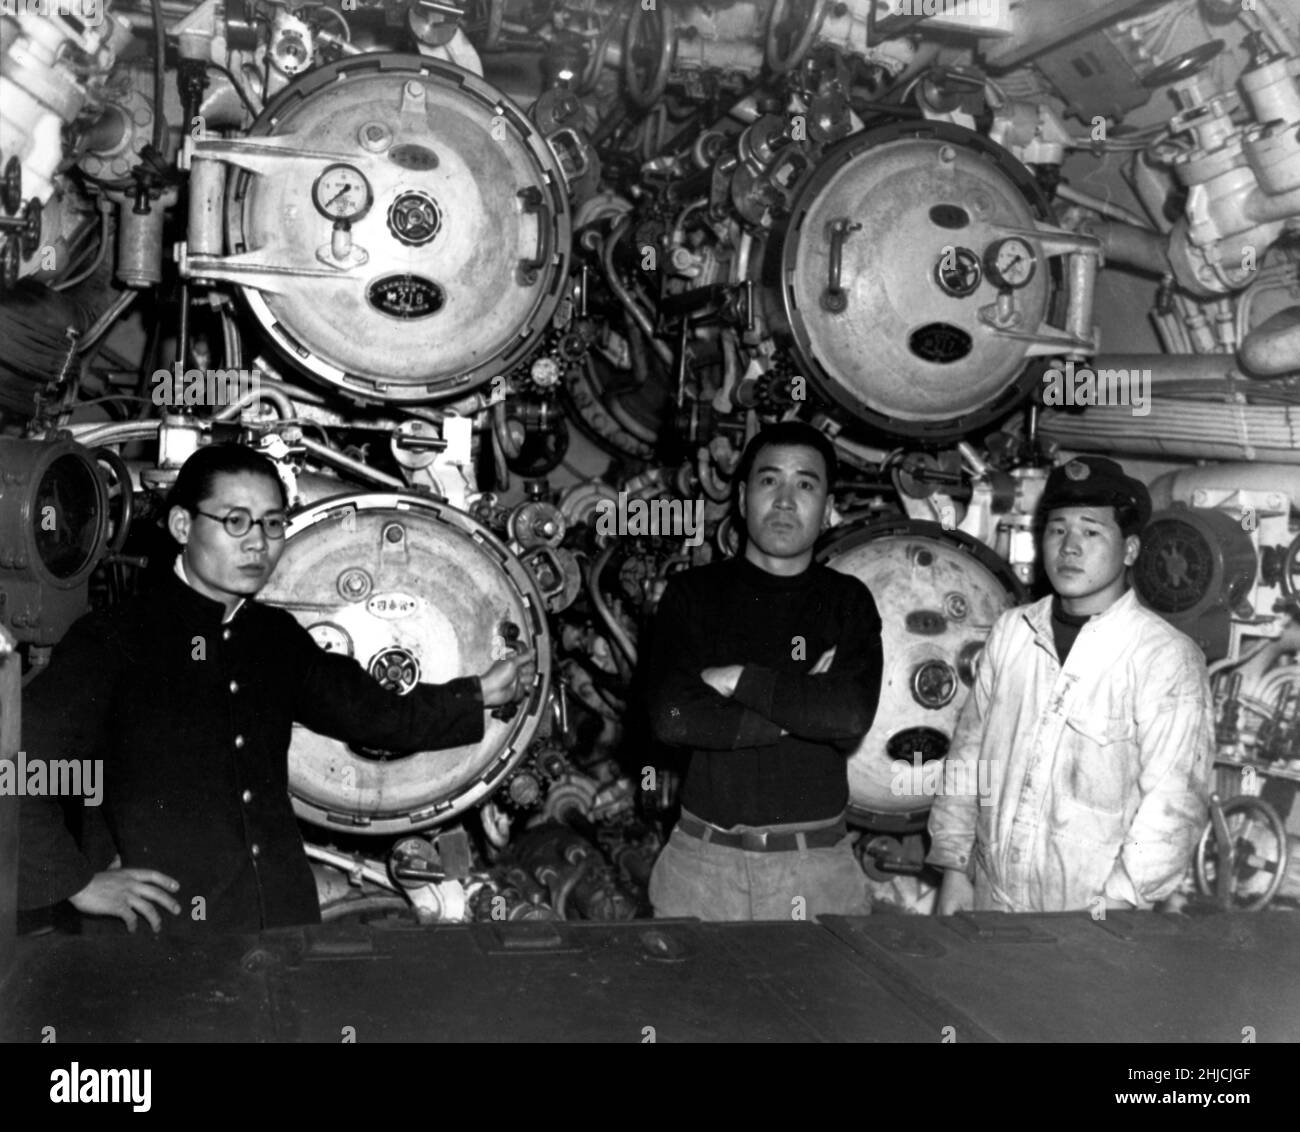 I-58 Ansicht im vorderen Torpedo-Raum, zeigt 21-Zoll-Torpedo-Rohre und drei Besatzungsmitglieder. Aufgenommen in Sasebo, Japan, 28. Januar 1946. I-58 war ein japanisches U-Boot vom Typ B3, das im letzten Jahr des Zweiten Weltkriegs diente. Ihr wichtigster Erfolg war USS Indianapolis, versenkt mit konventionellen Torpedos 30. Juli 1945. Das U-Boot ergab sich im September 1945 und wurde später von der US-Marine versenkt. (Abgeschnitten und gereinigt) Stockfoto